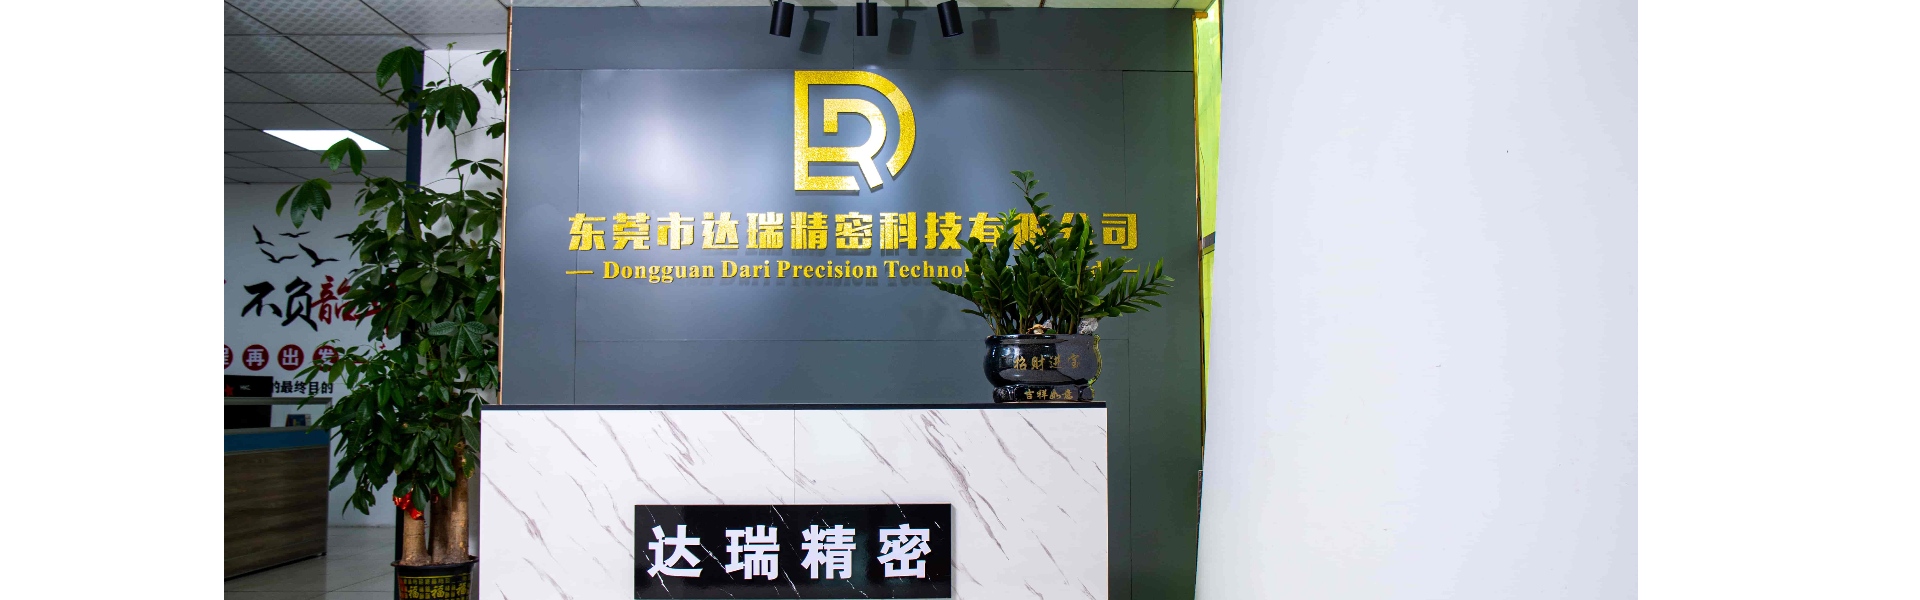 Plastová forma, vstřikovací lis, plastová skořepina,Dongguan Darui Precision Technology Co., Ltd.